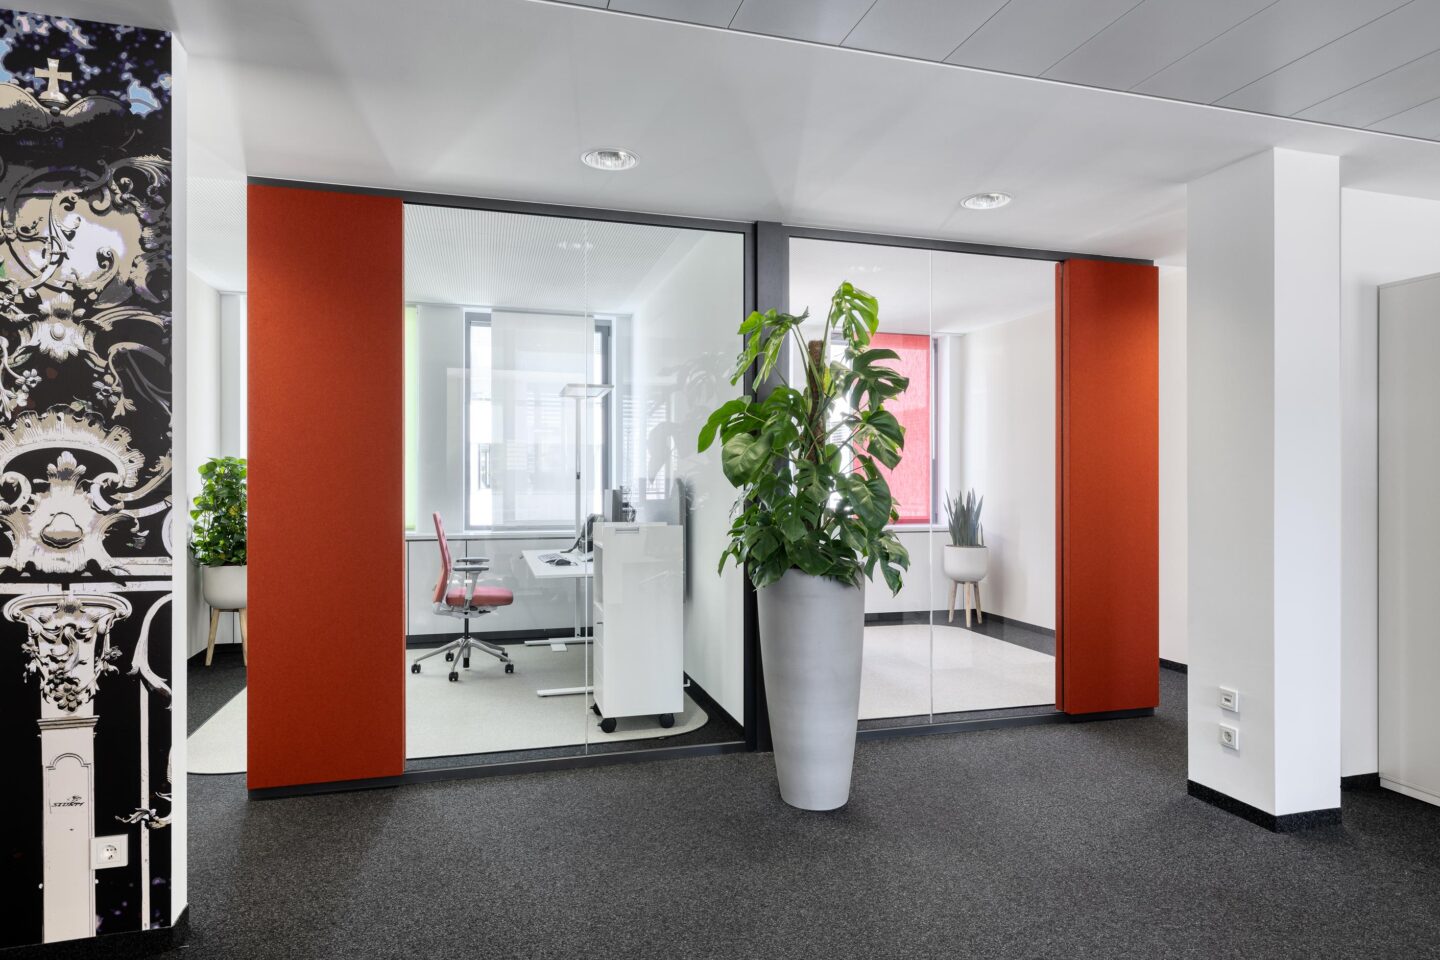 verglaste, offene Büros │ wohnliche Atmosphäre mit den idealen Accessoires │ digitale Filiale der Sparkasse Karlsruhe